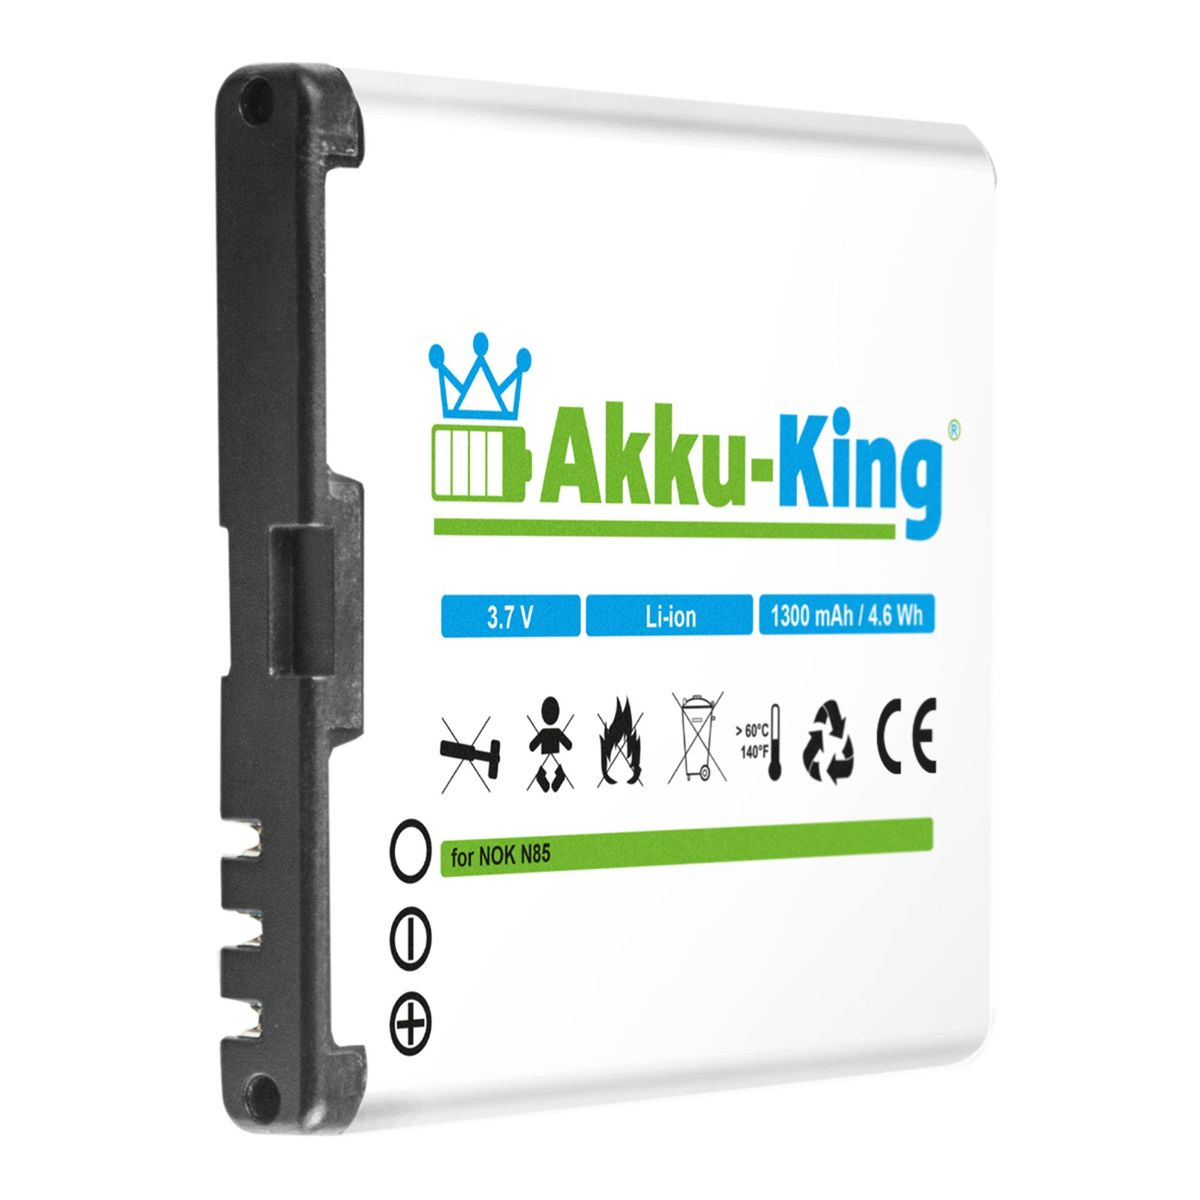 Akku Handy-Akku, 1300mAh mit 3.7 Volt, AKKU-KING BL-5K Li-Ion Nokia kompatibel